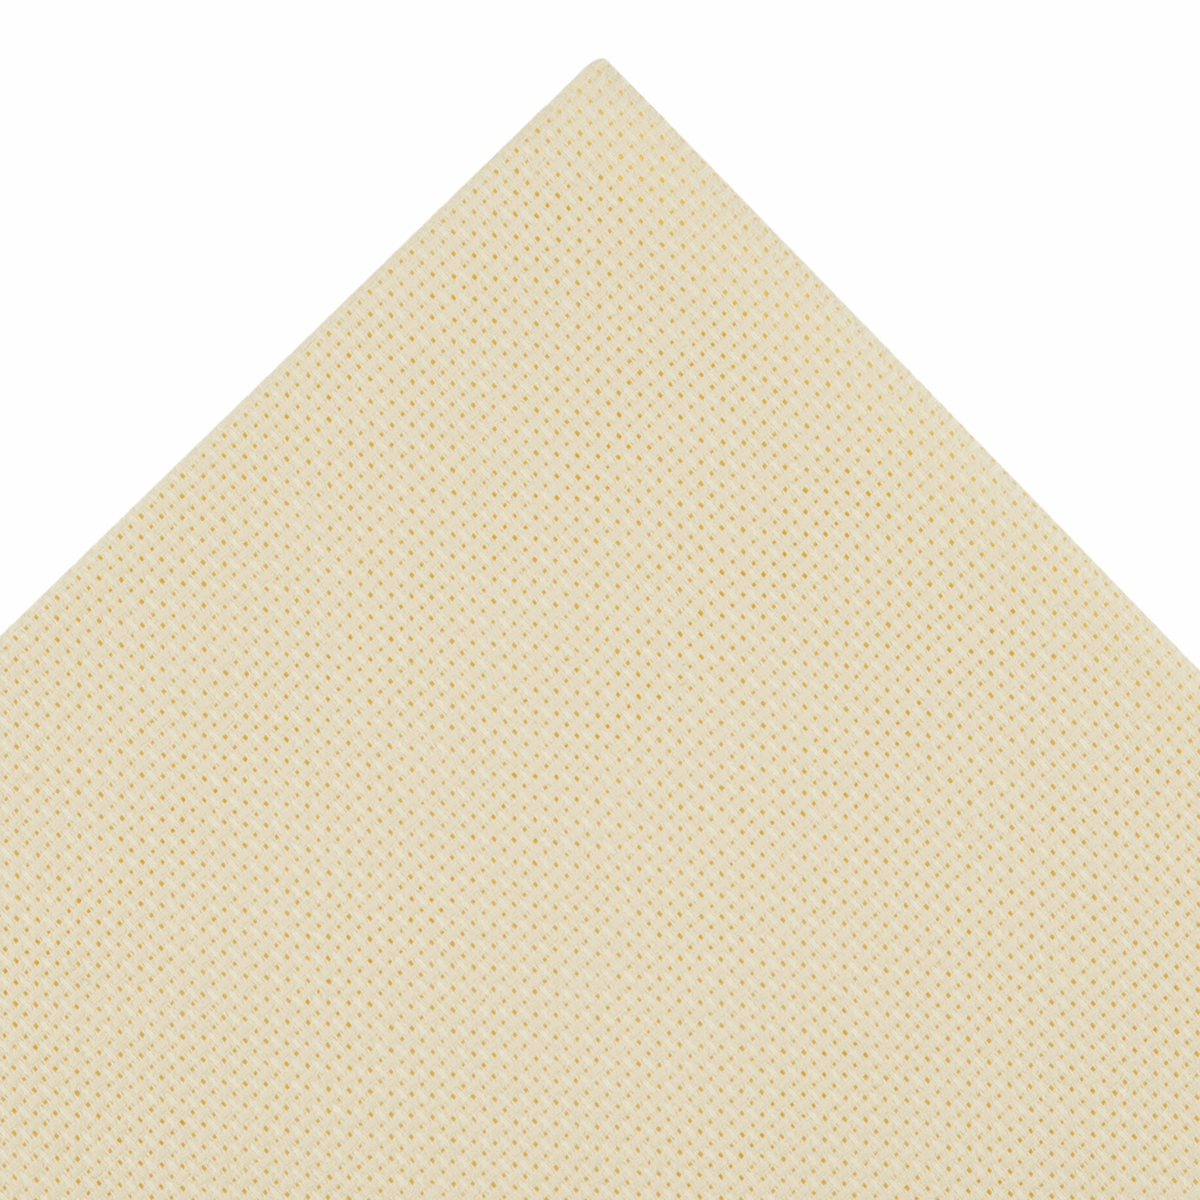 Aida Needlecraft Fabric - 14 Count - 45 x 30cm - Cream